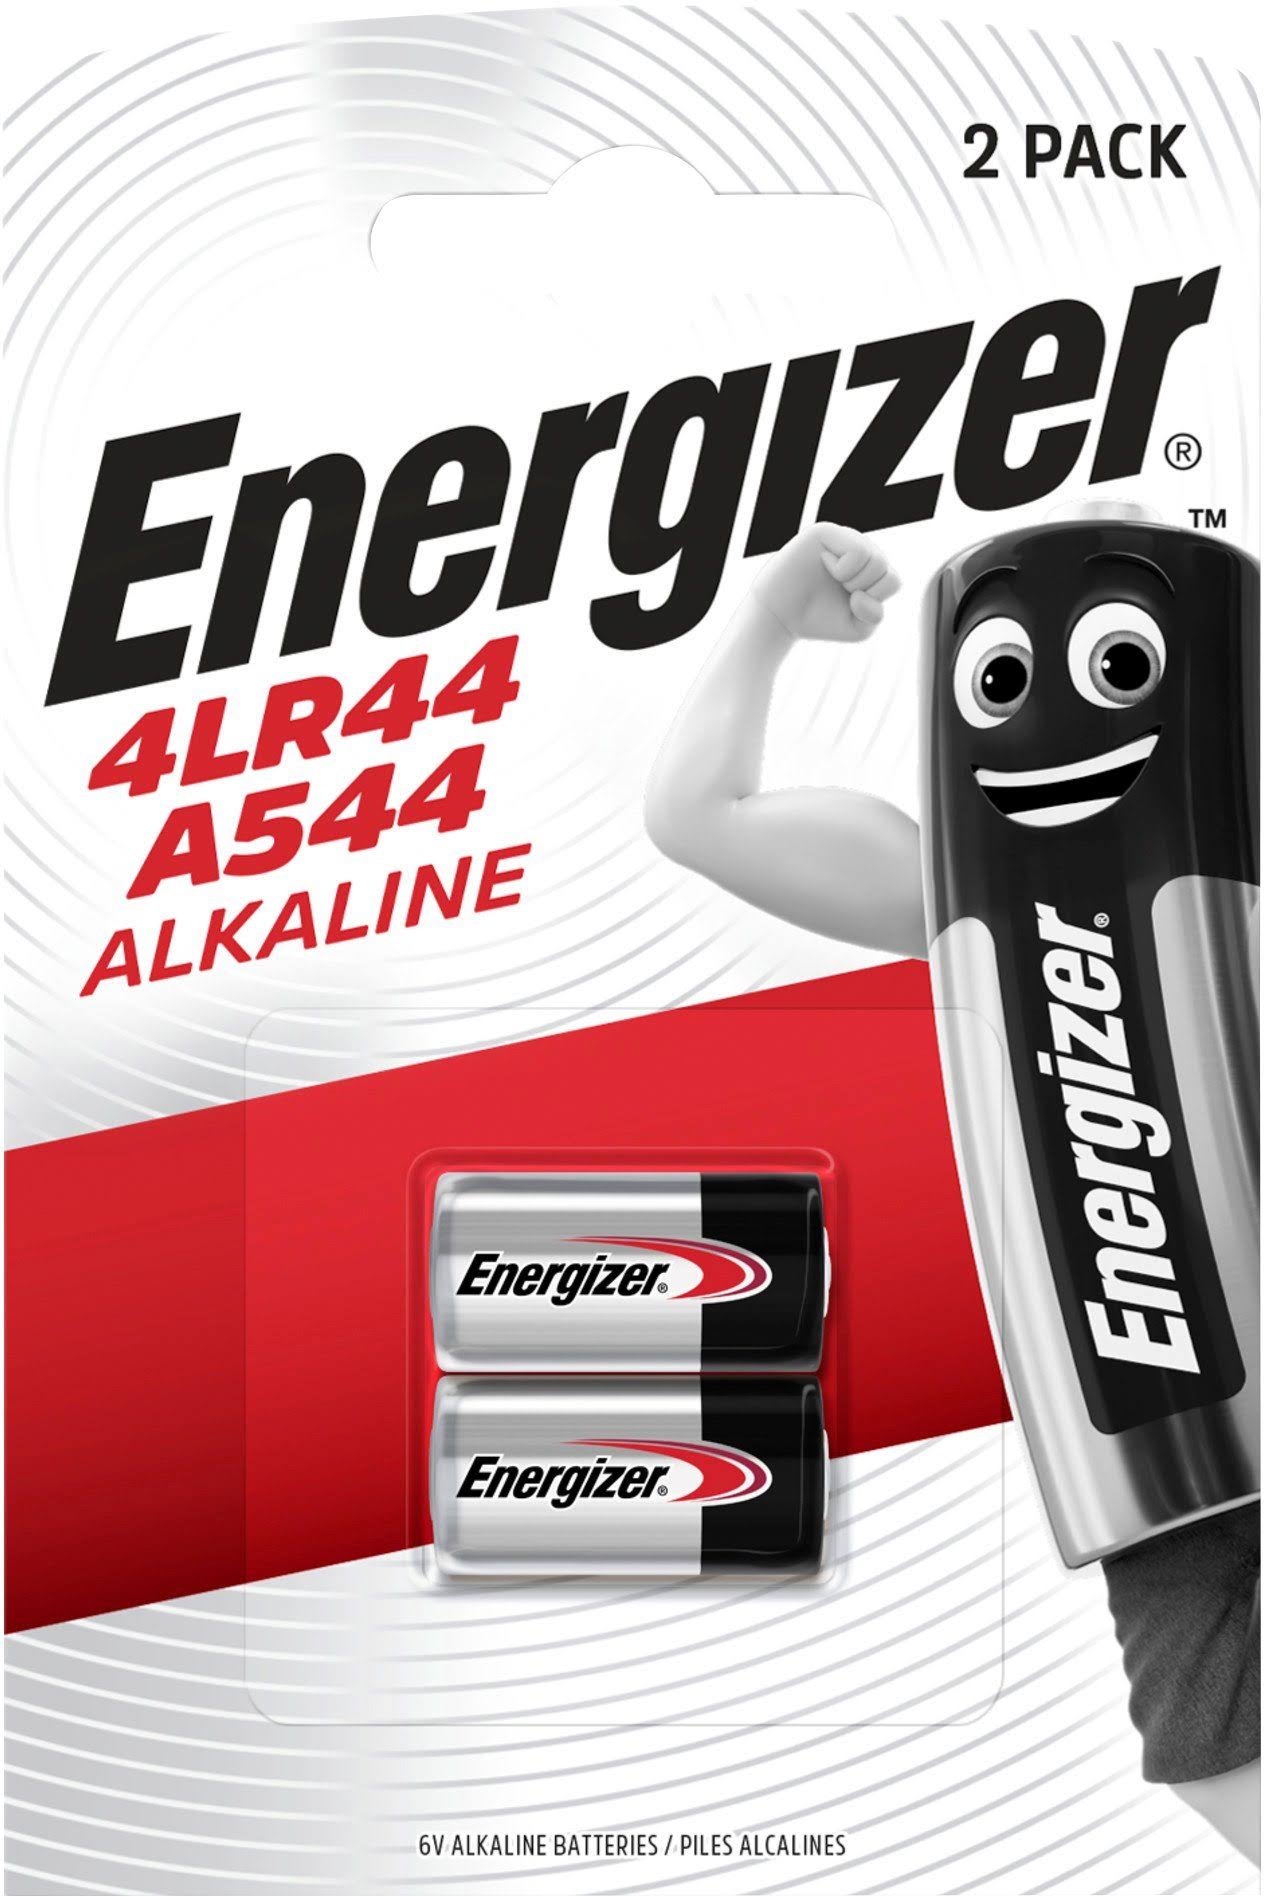 Energizer Alkaline Battery - 6V, 4LR44/A544